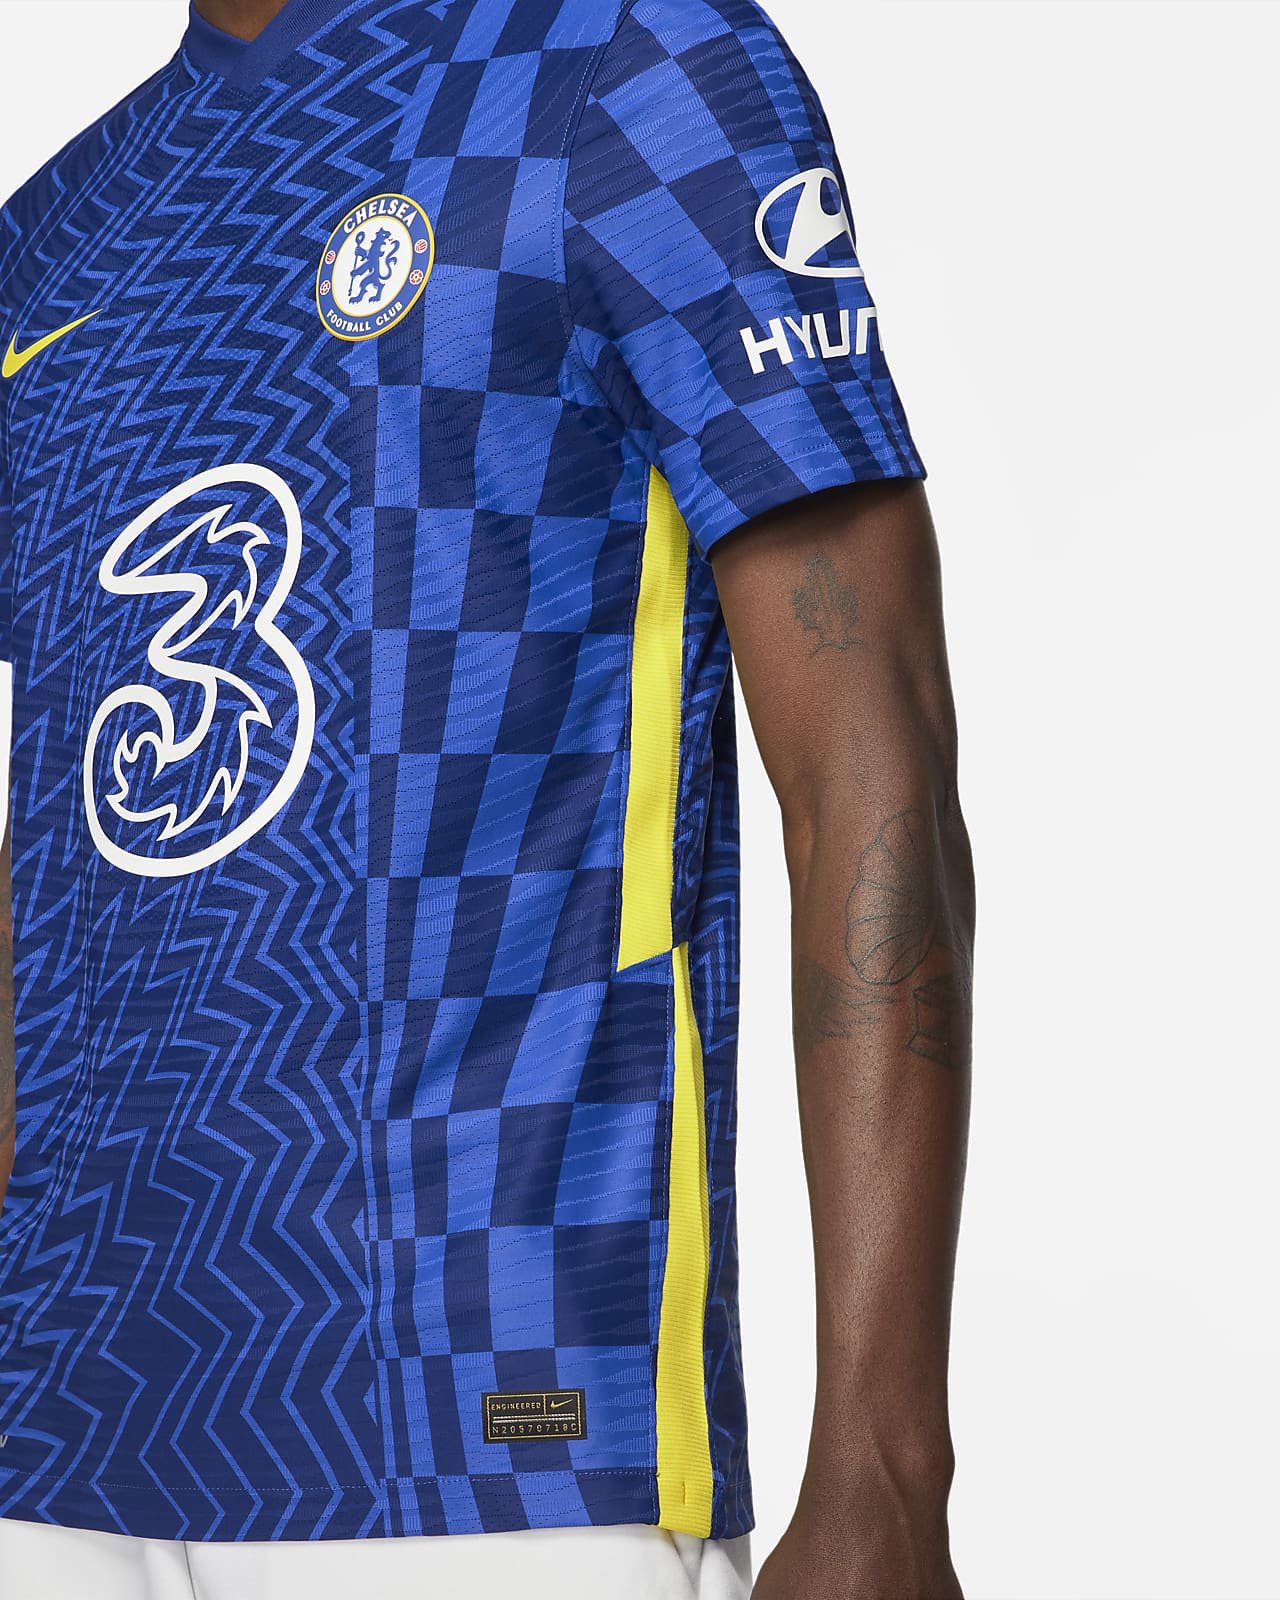 Men's Genuine Chelsea 2021/22 Home Soccer Jersey Football Shirt Short Sleeve